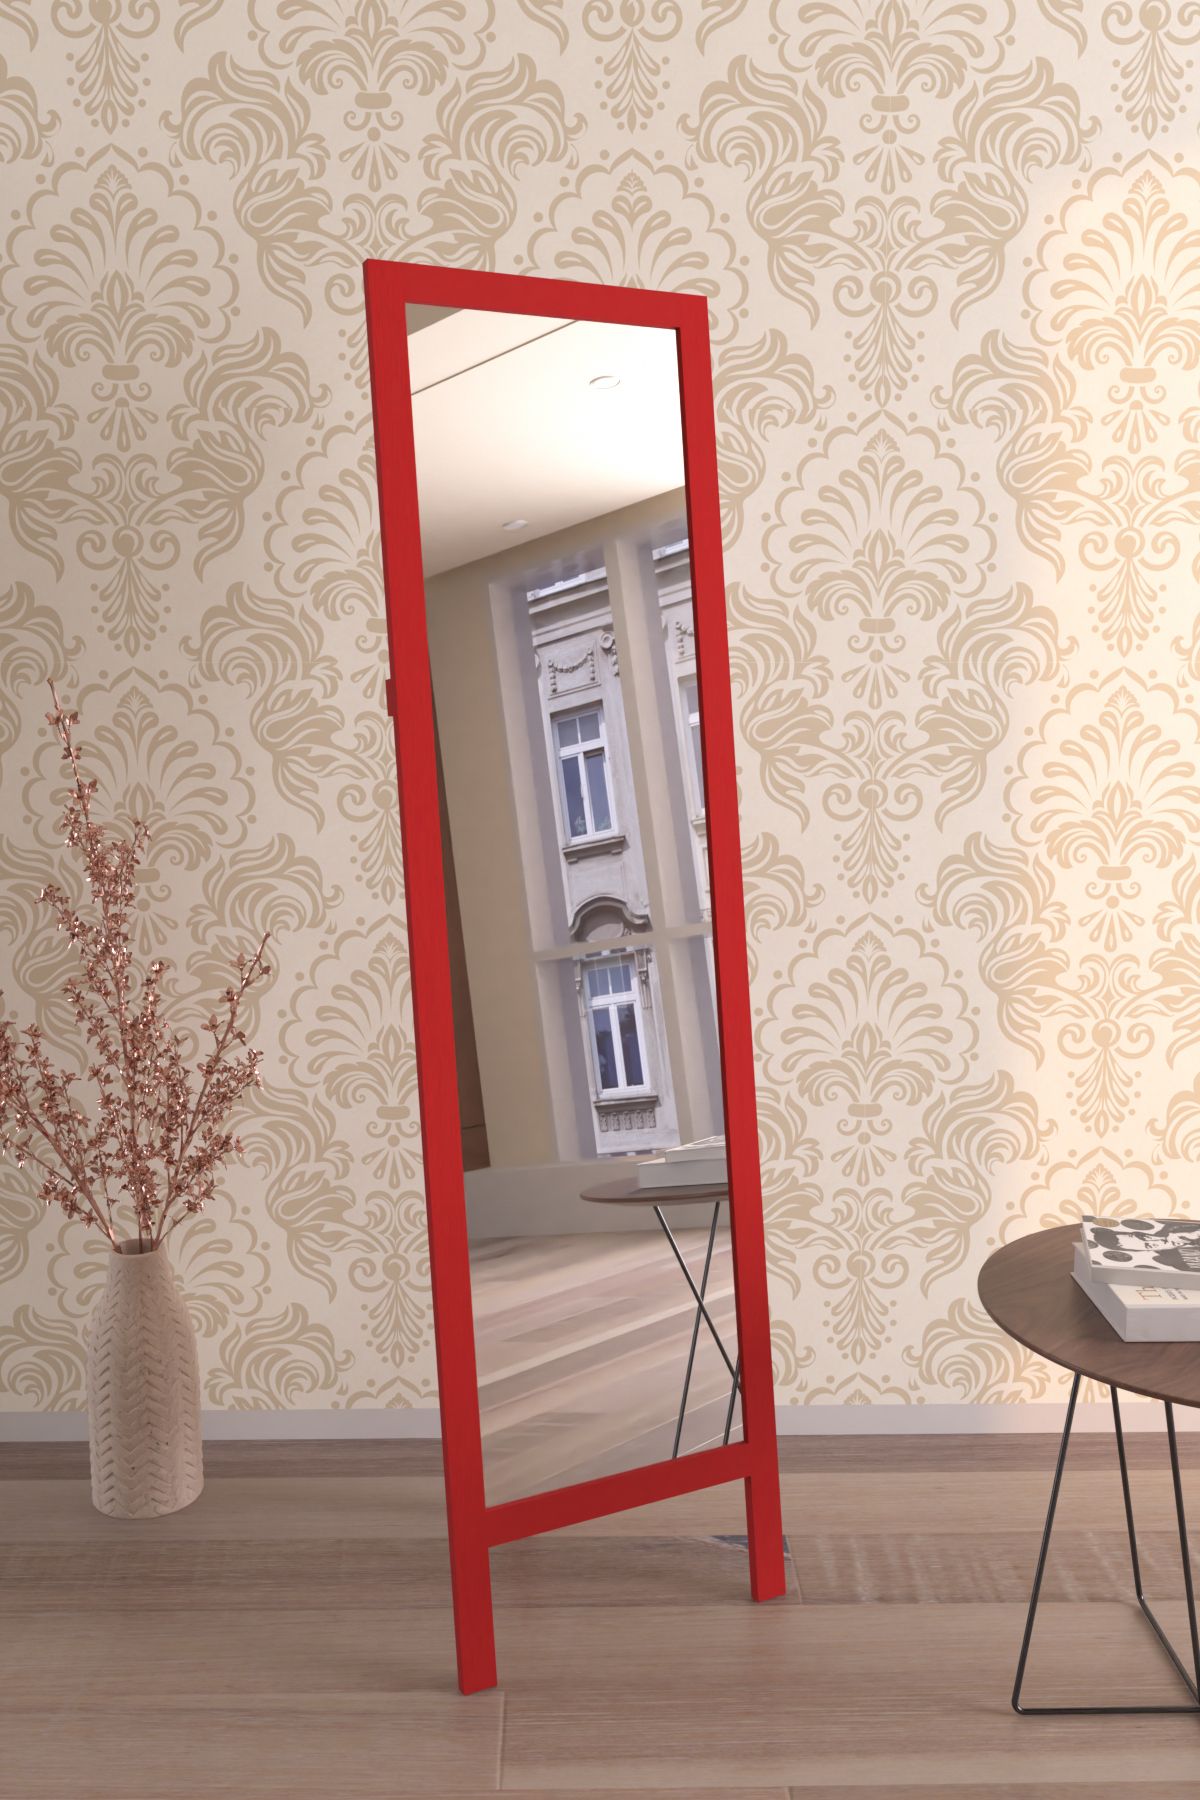 Hediyeler Kapında Kırmızı Ahşap Ayaklı Boy Aynası 145x40cm